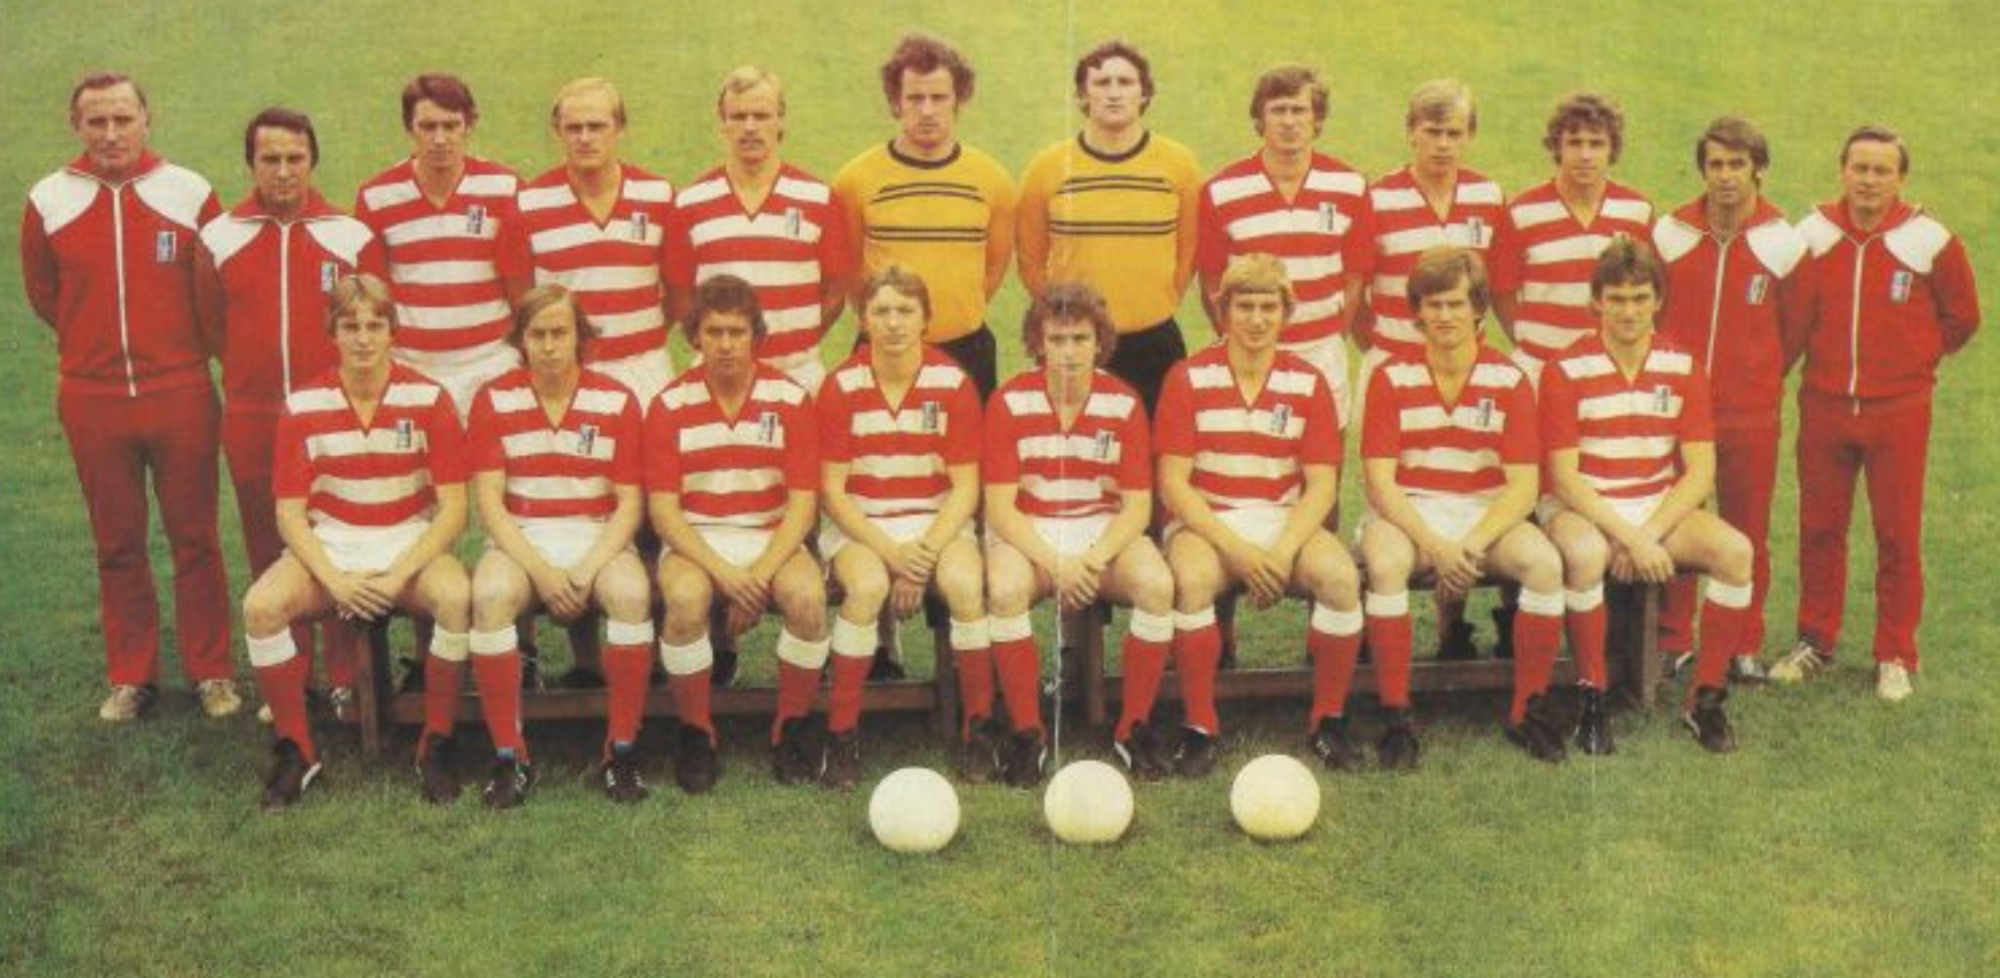 RWE-Mannschaftsfoto-1980-81_gross.png